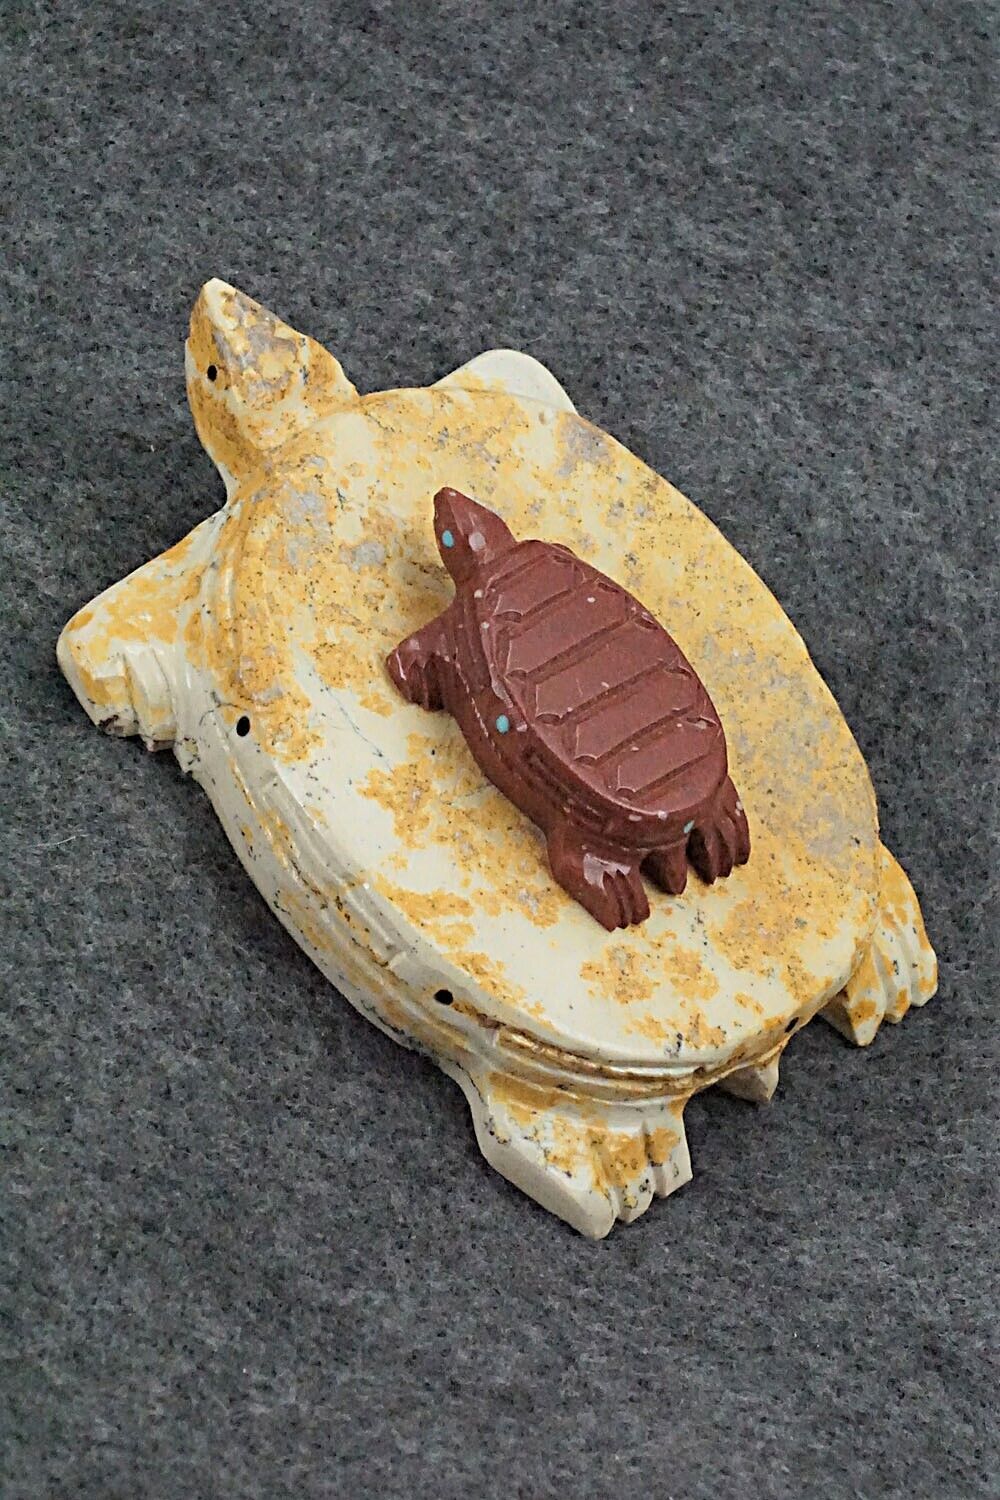 Turtles Zuni Fetish Carving - Jesus Espino